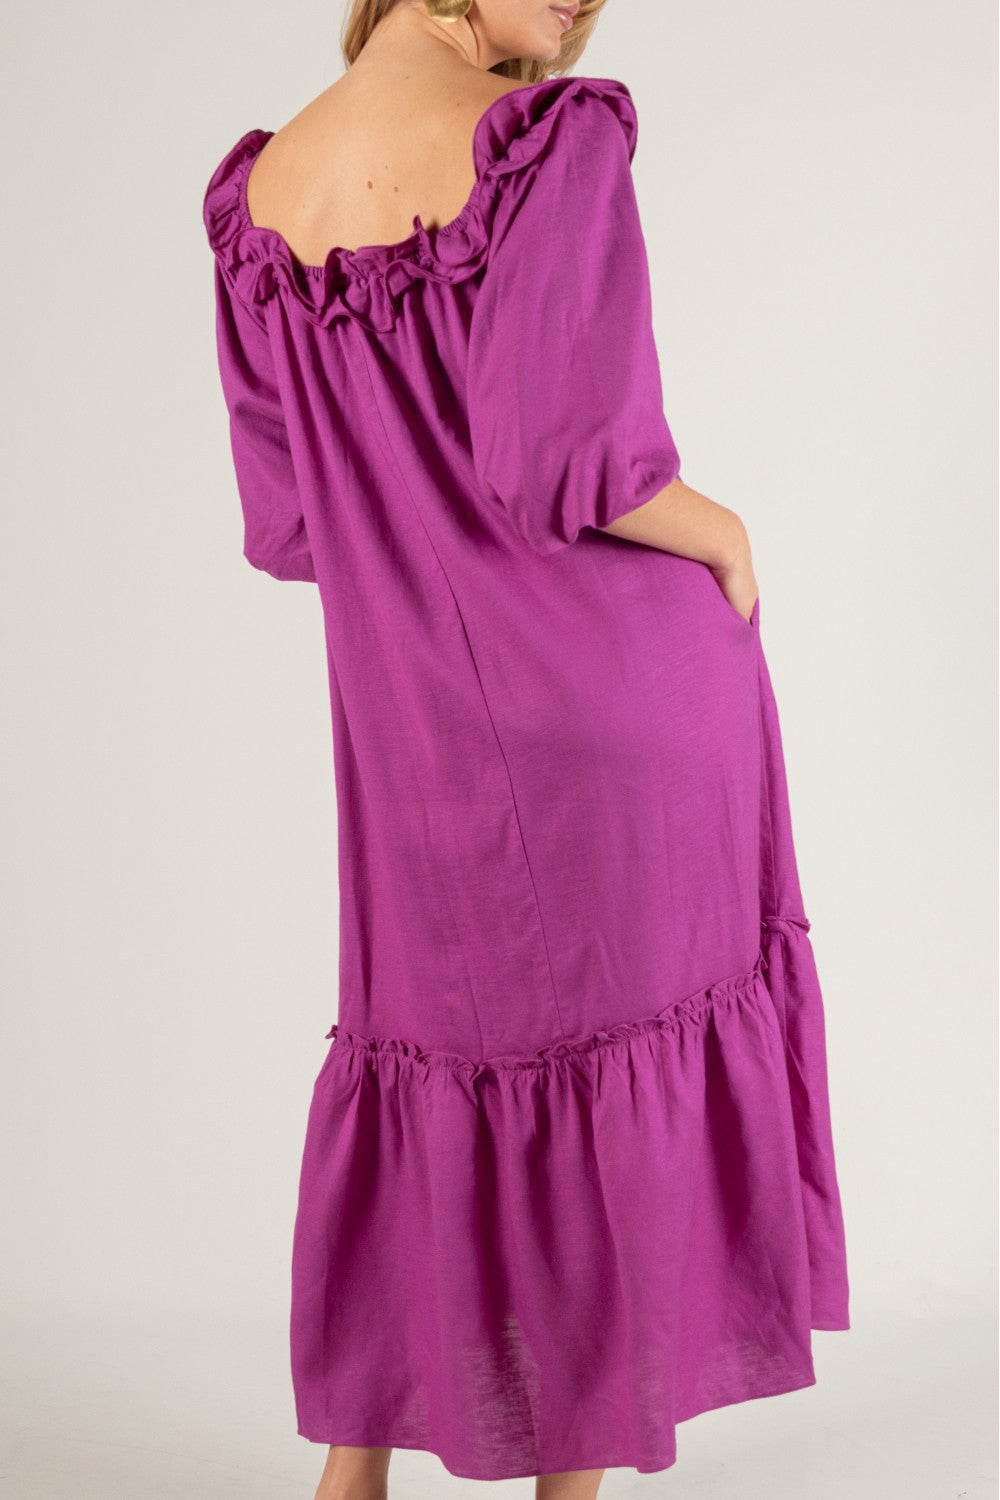 Linen Ruffled Neckline Dress